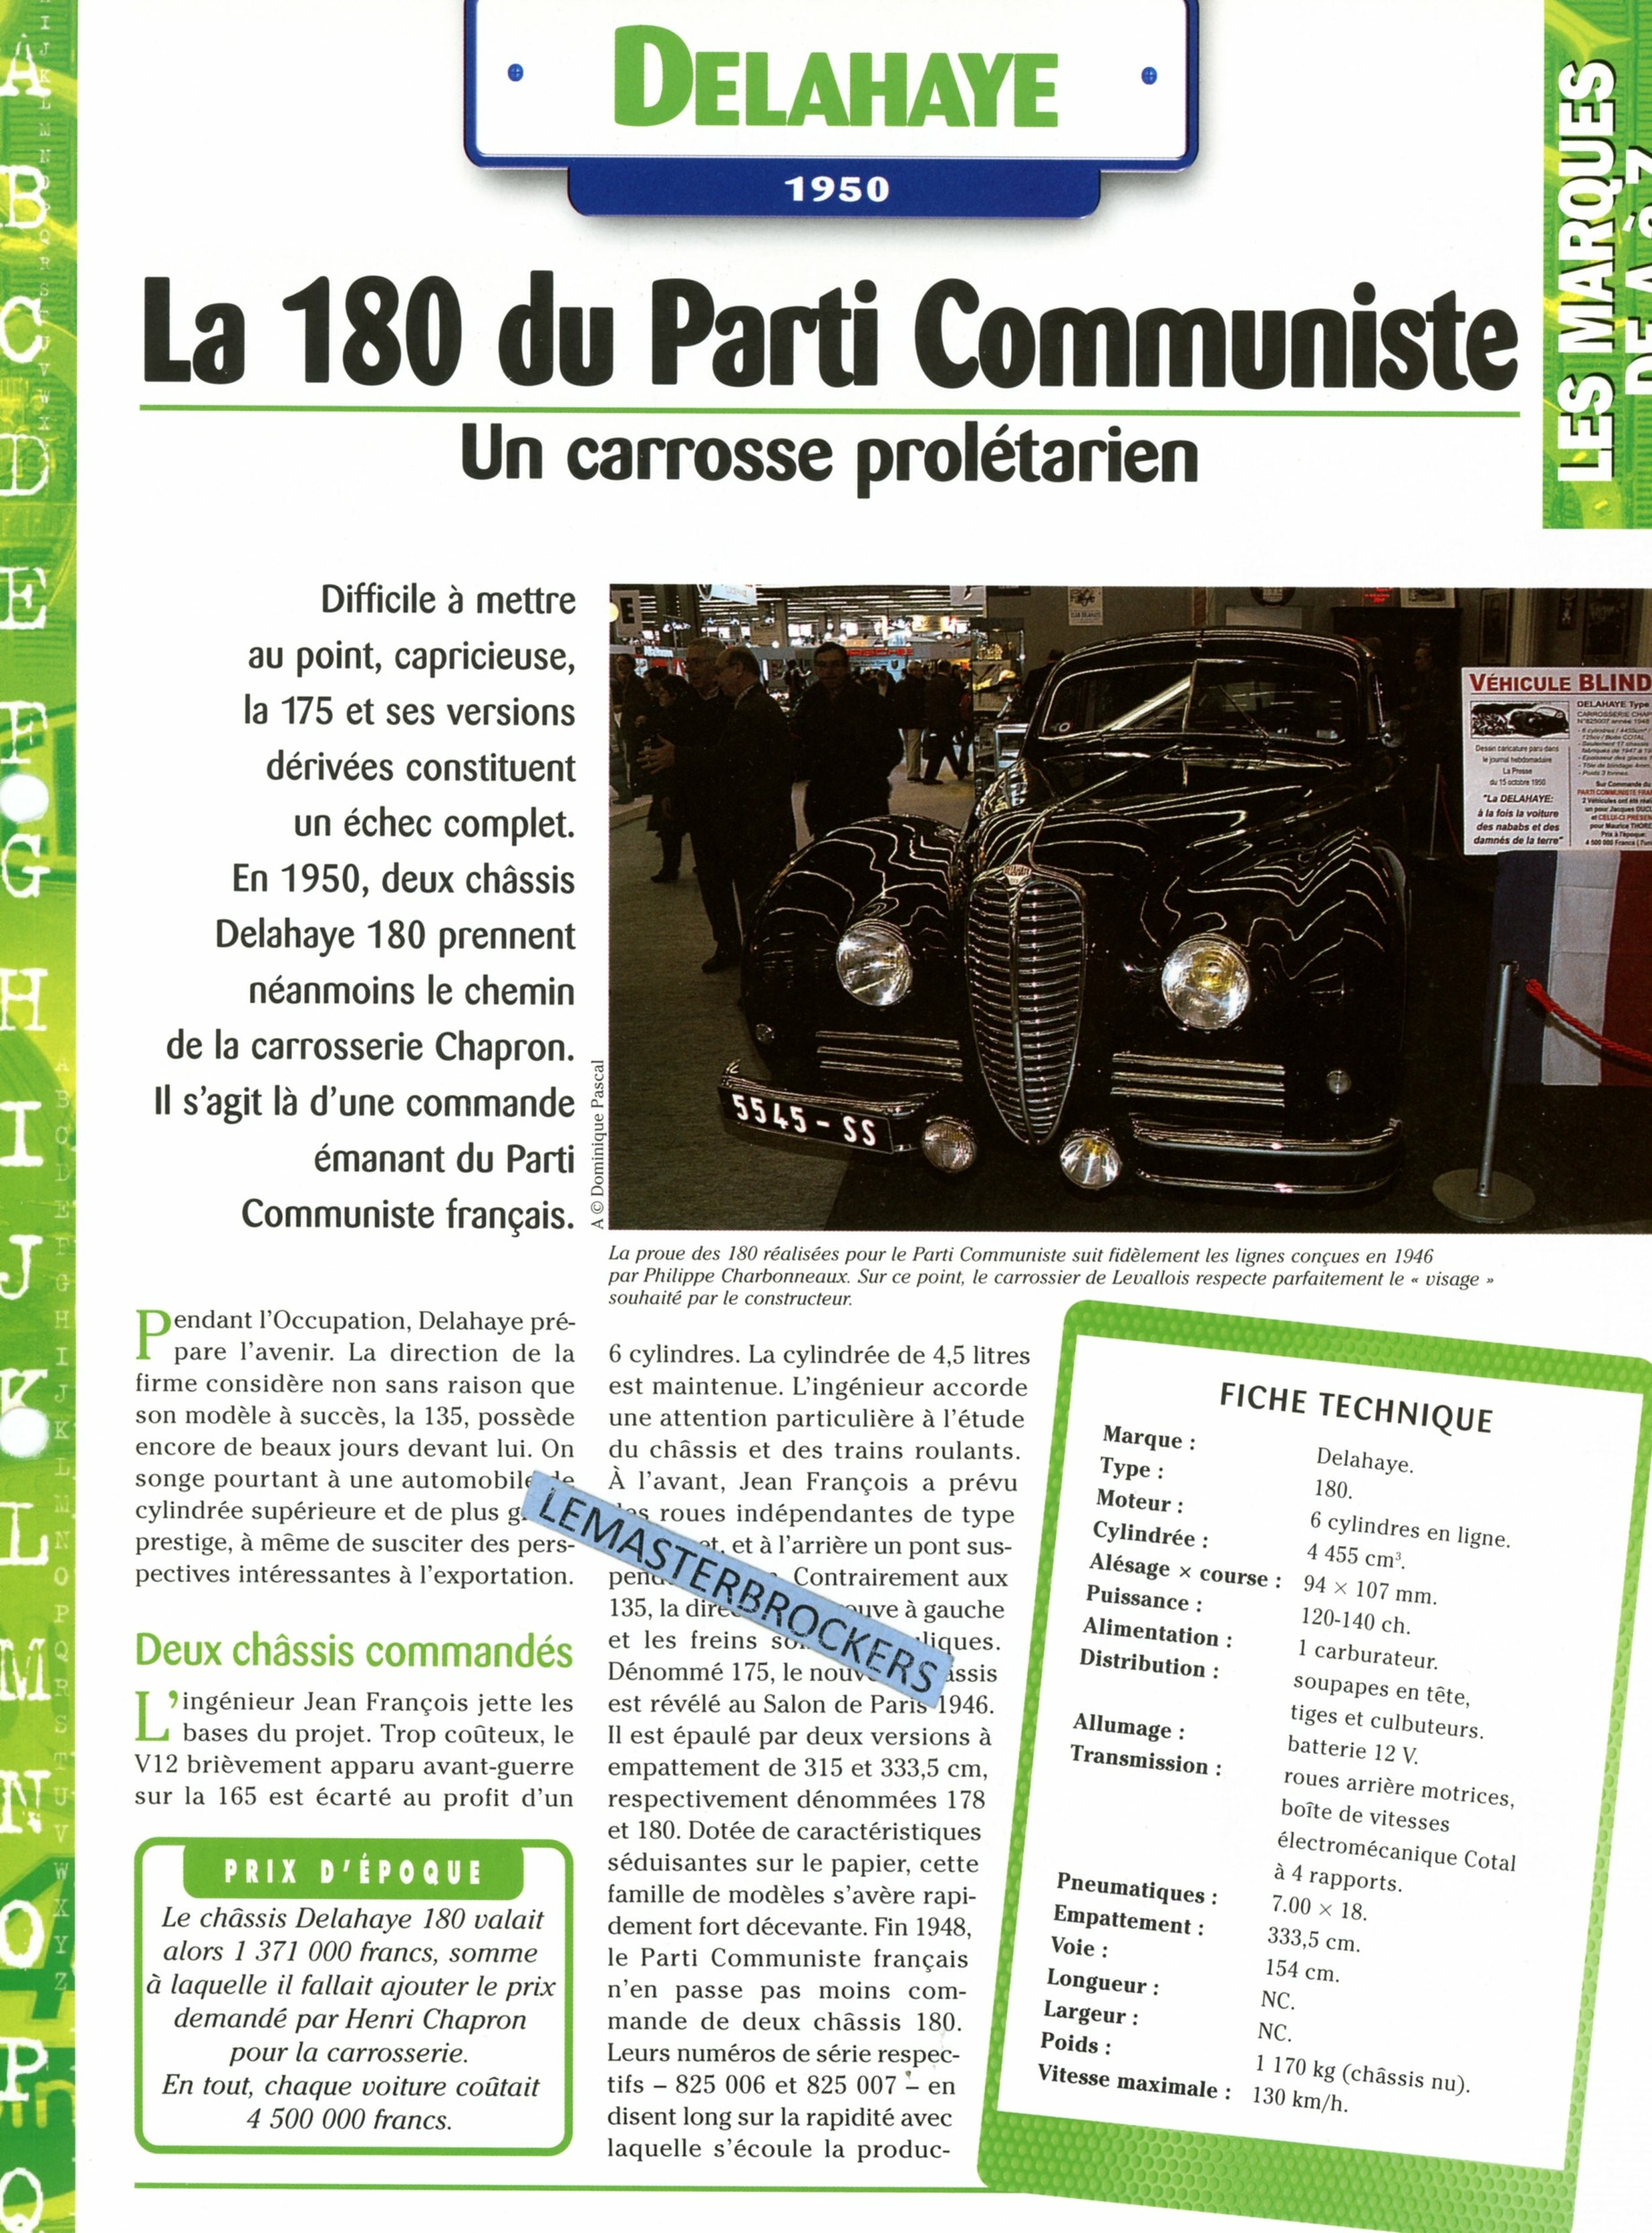 DELAHAYE 180 DU PARTI COMMUNISTE 1950 - FICHE AUTO COLLECTION HACHETTE